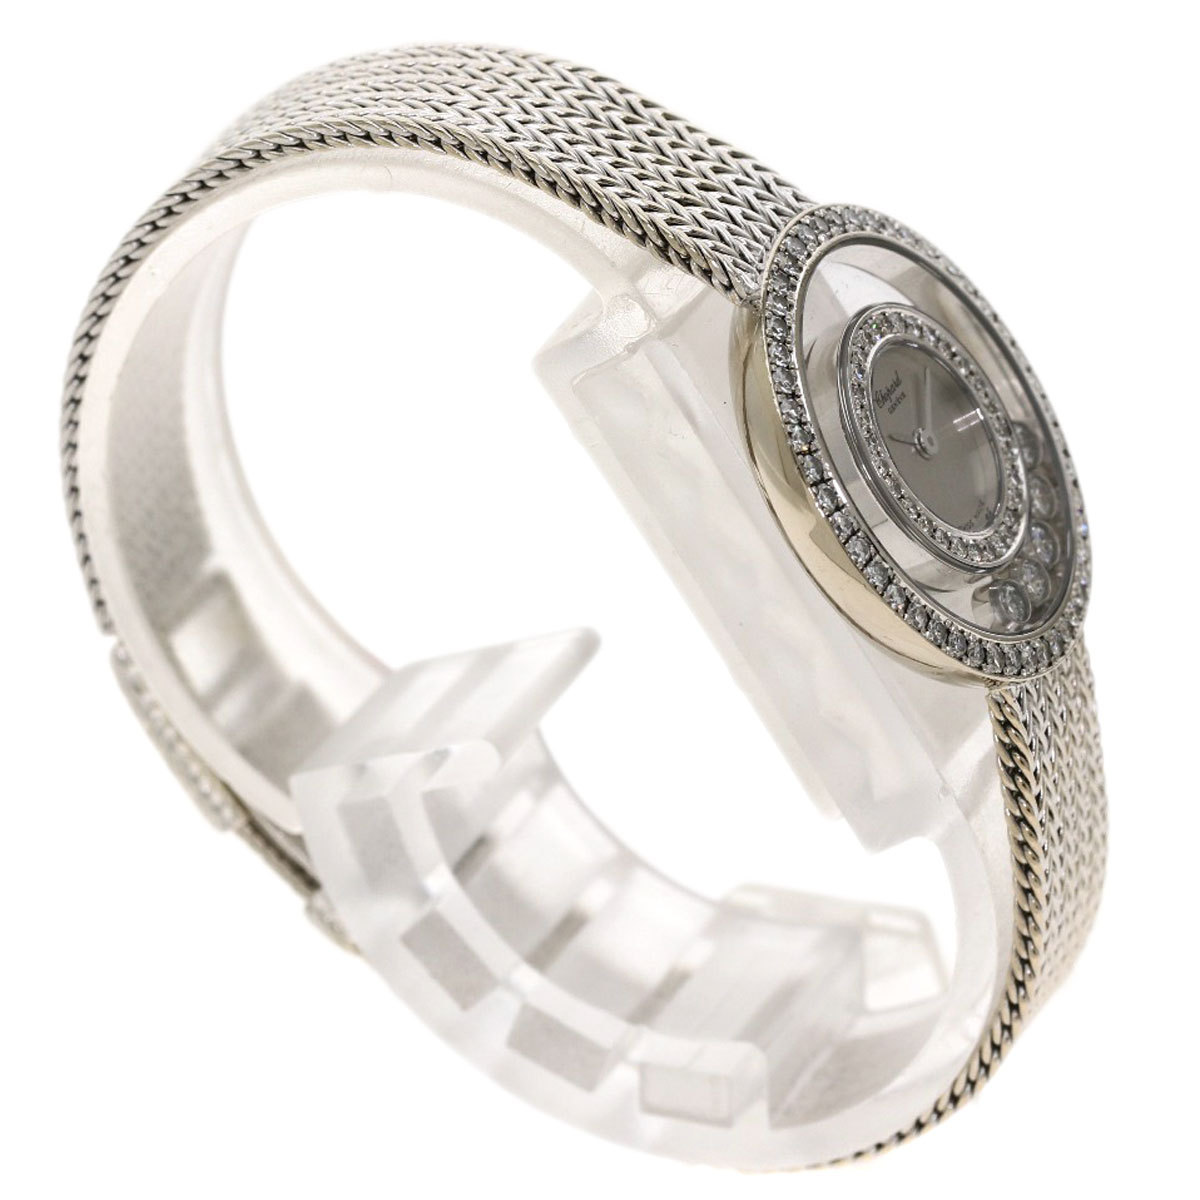 Chopard Chopard 20/4355 happy diamond wristwatch K18 white gold K18WG diamond lady's used 